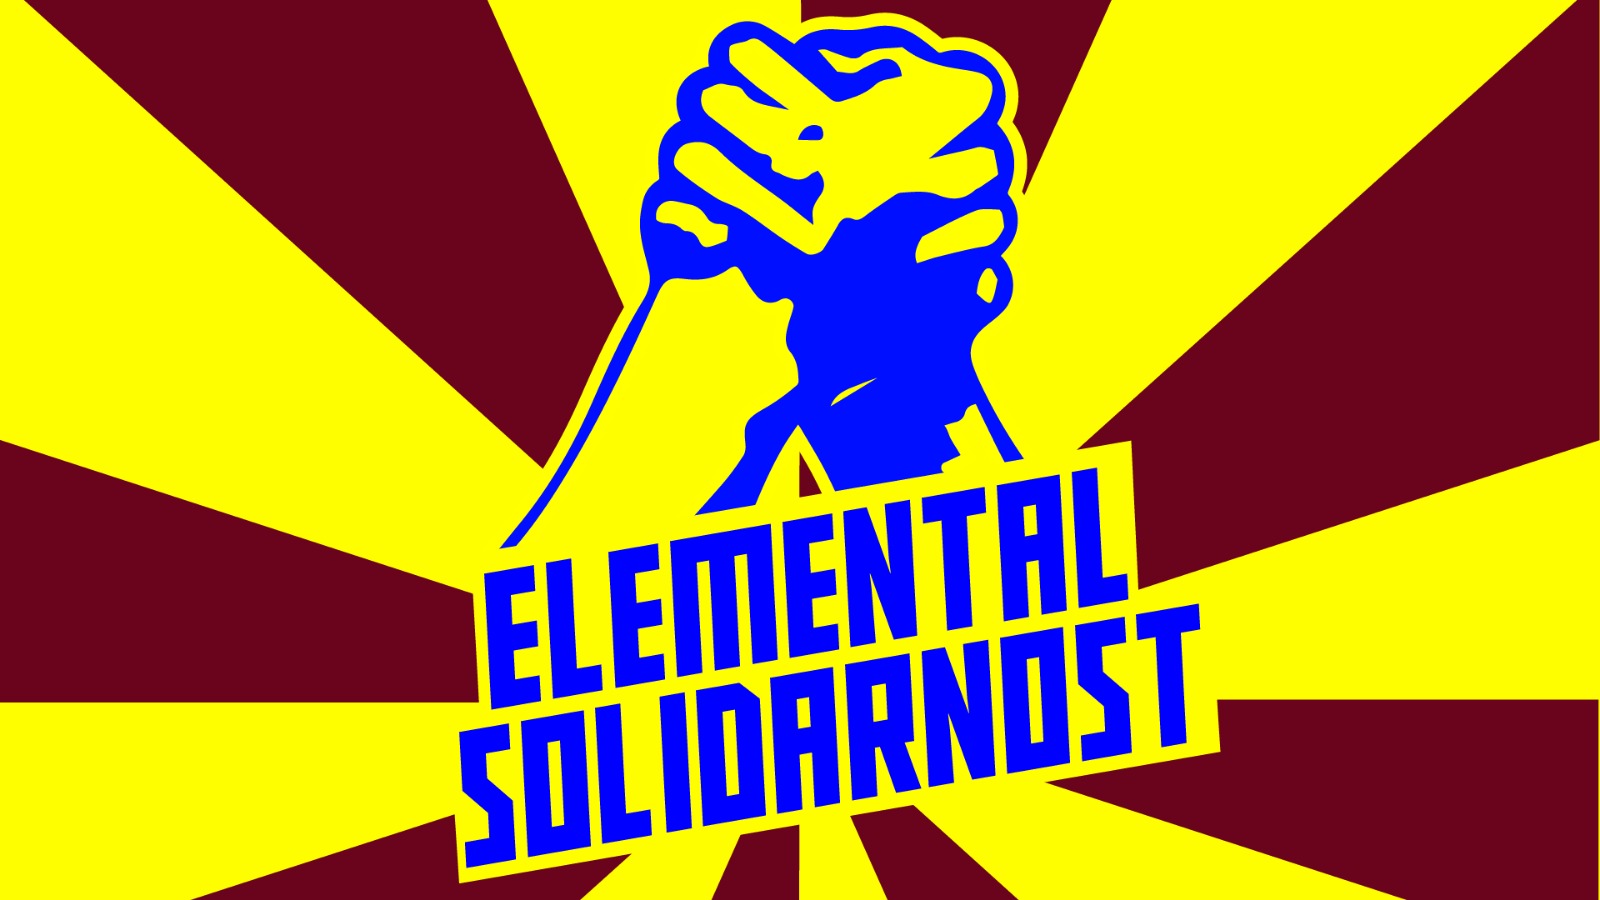 Elemental uz prosvjetare: nova pjesma Solidarnost